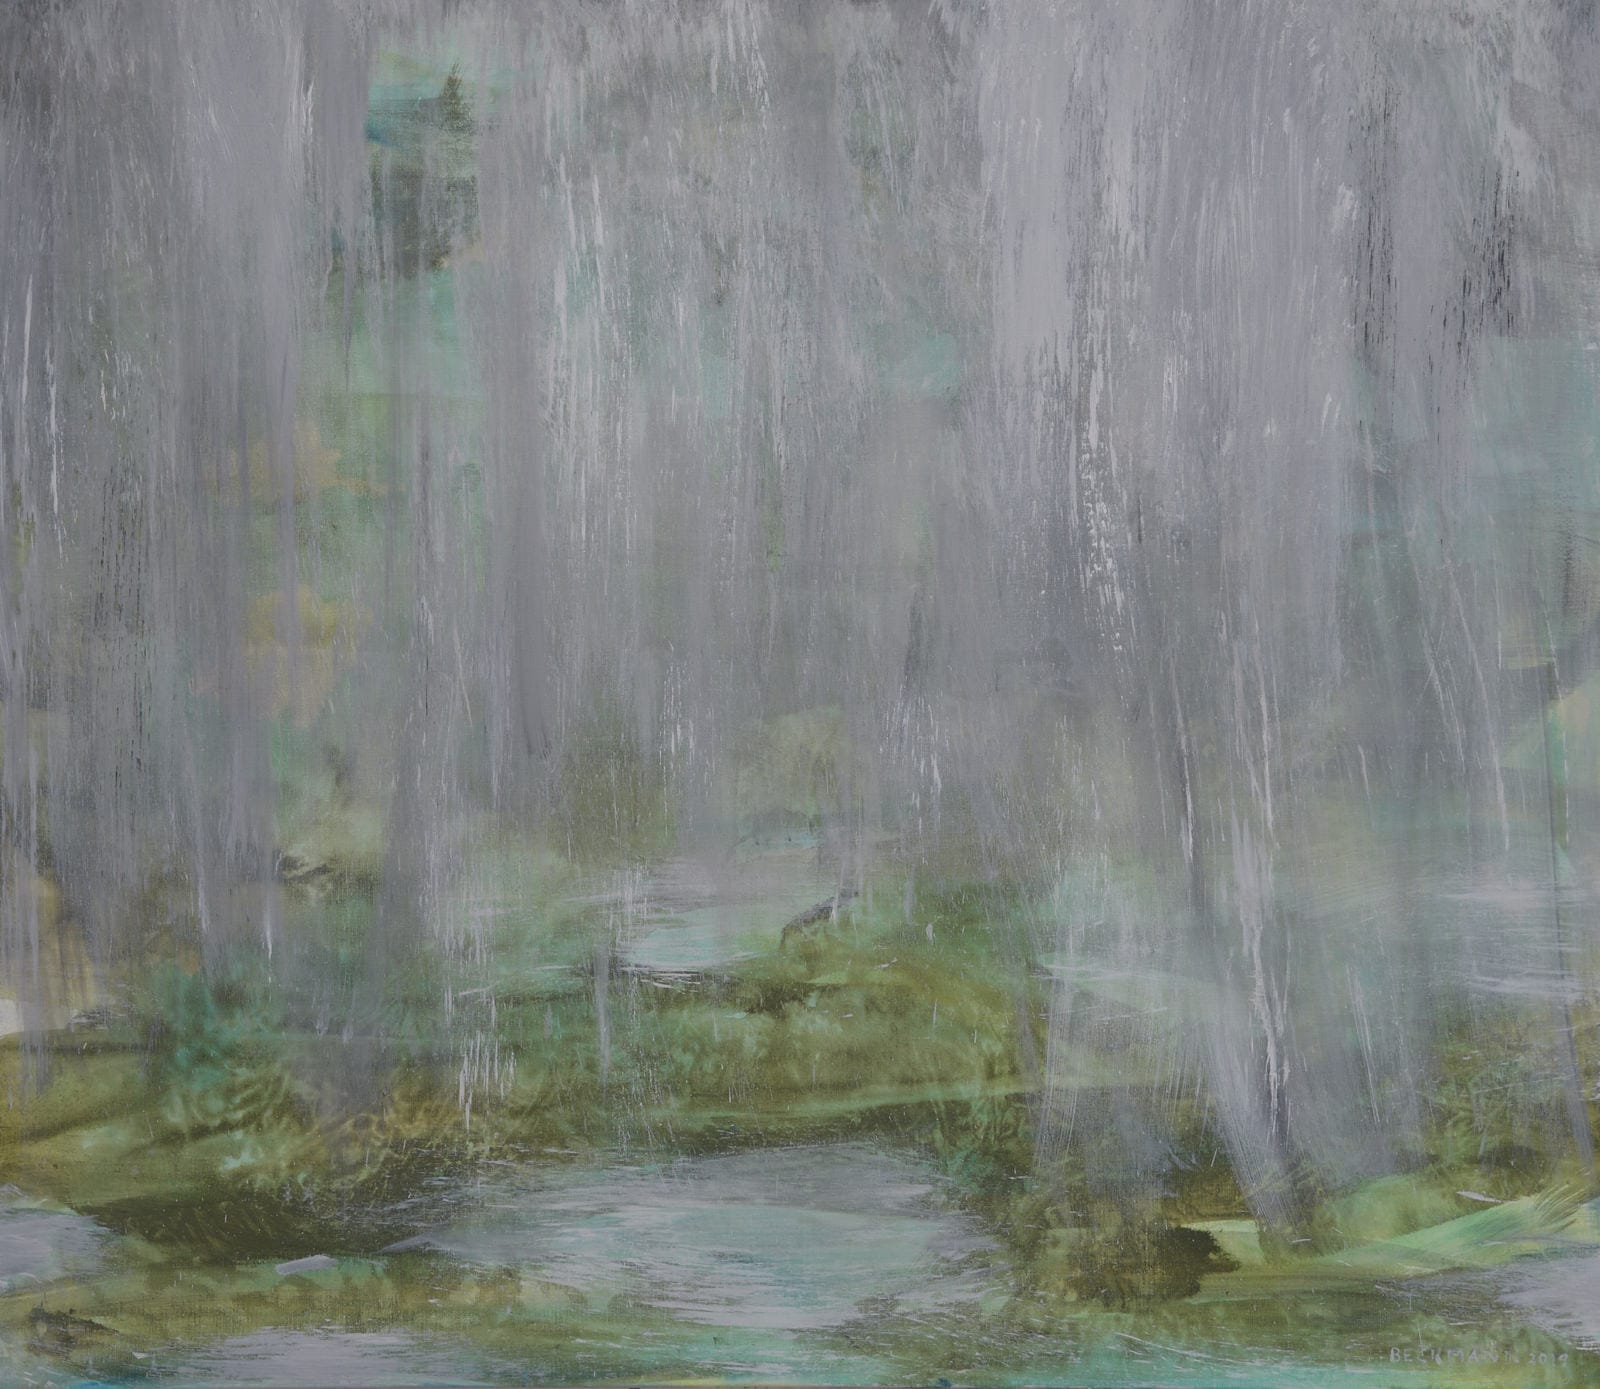 Sabine Beckmann, Waterval, oil on linen, 100 x 115 cm, 2019